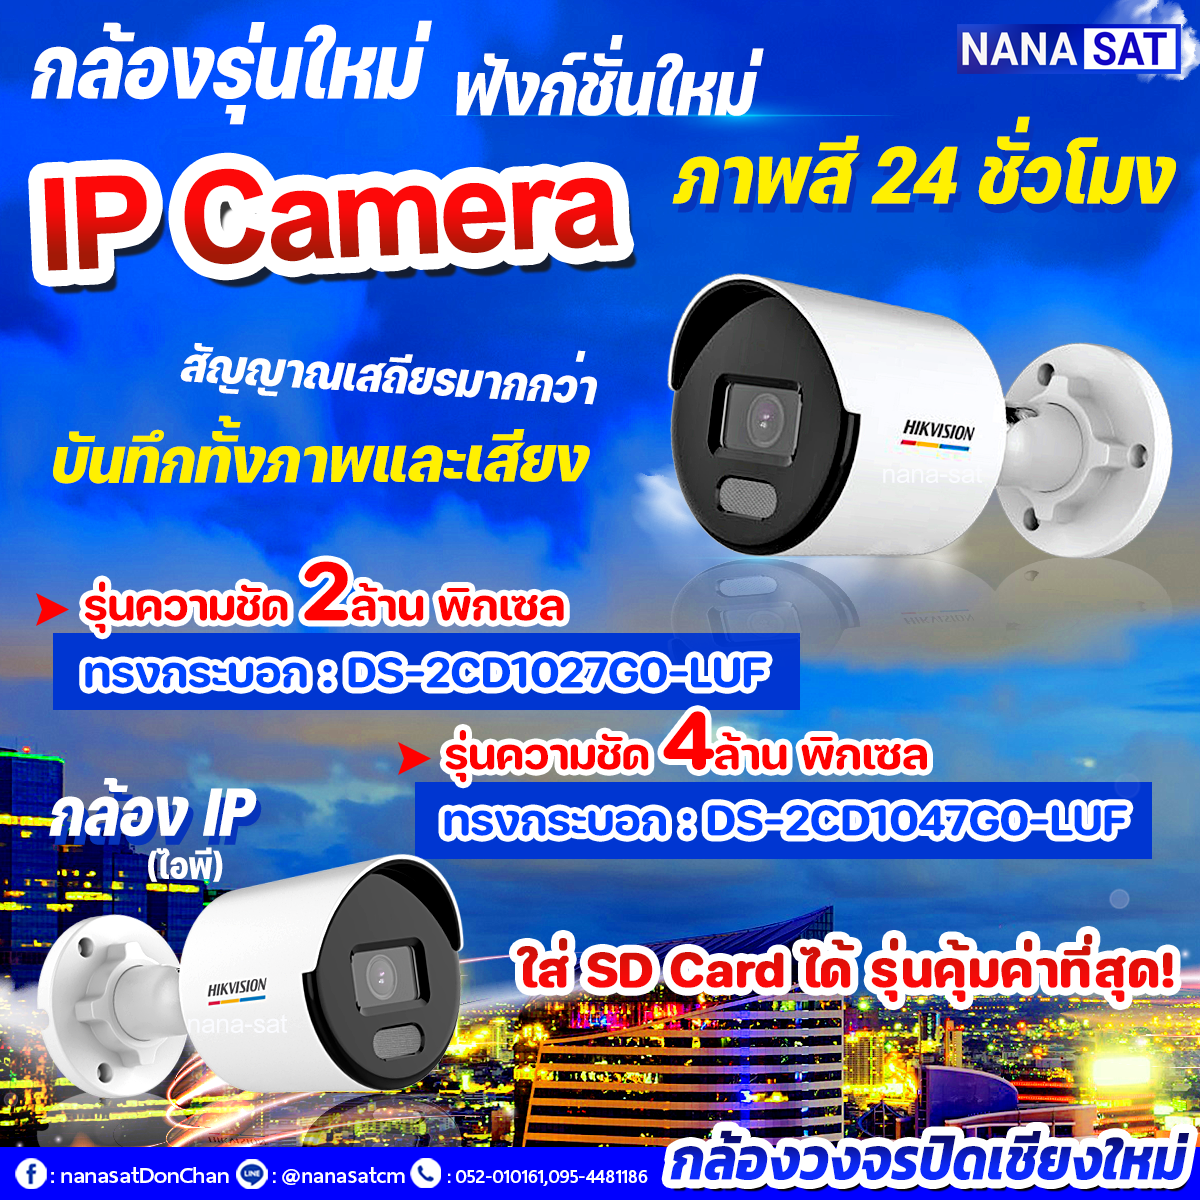 กล้องวงจรปิดเชียงใหม่ฟังก์ชั่นใหม่ IP Camera กล้องรุ่นใหม่